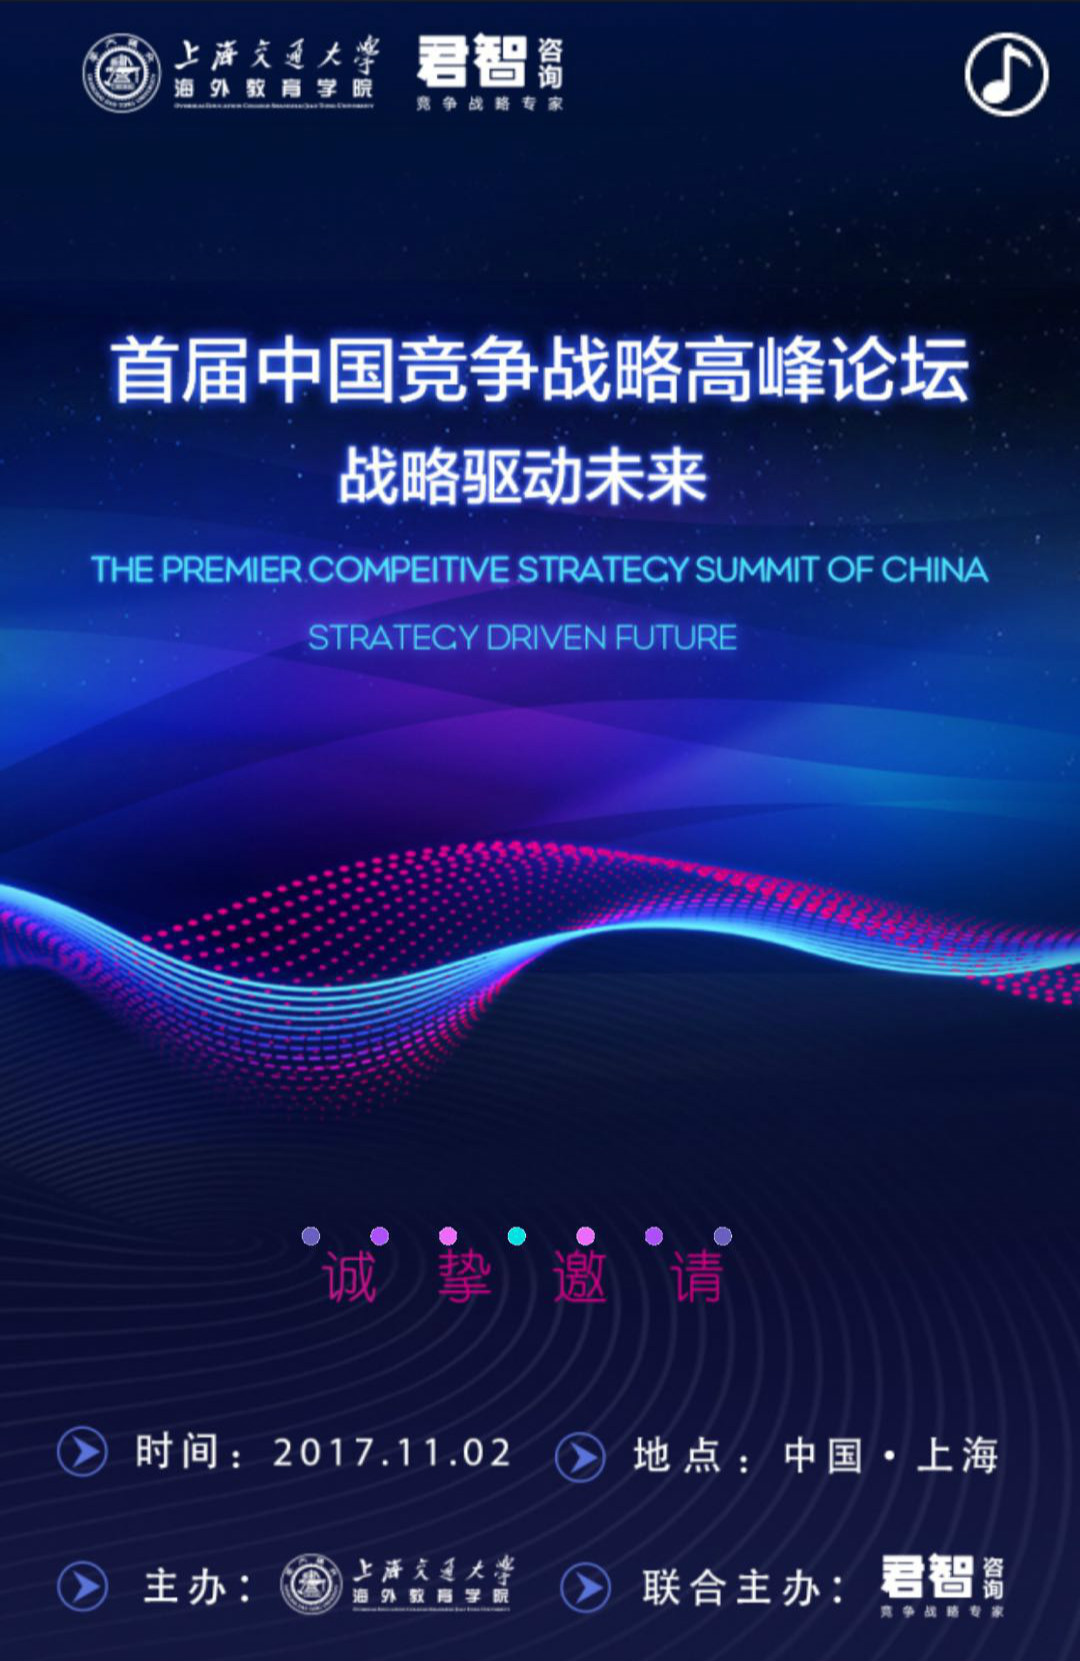 首届中国竞争战略高峰论坛 | 战略驱动未来